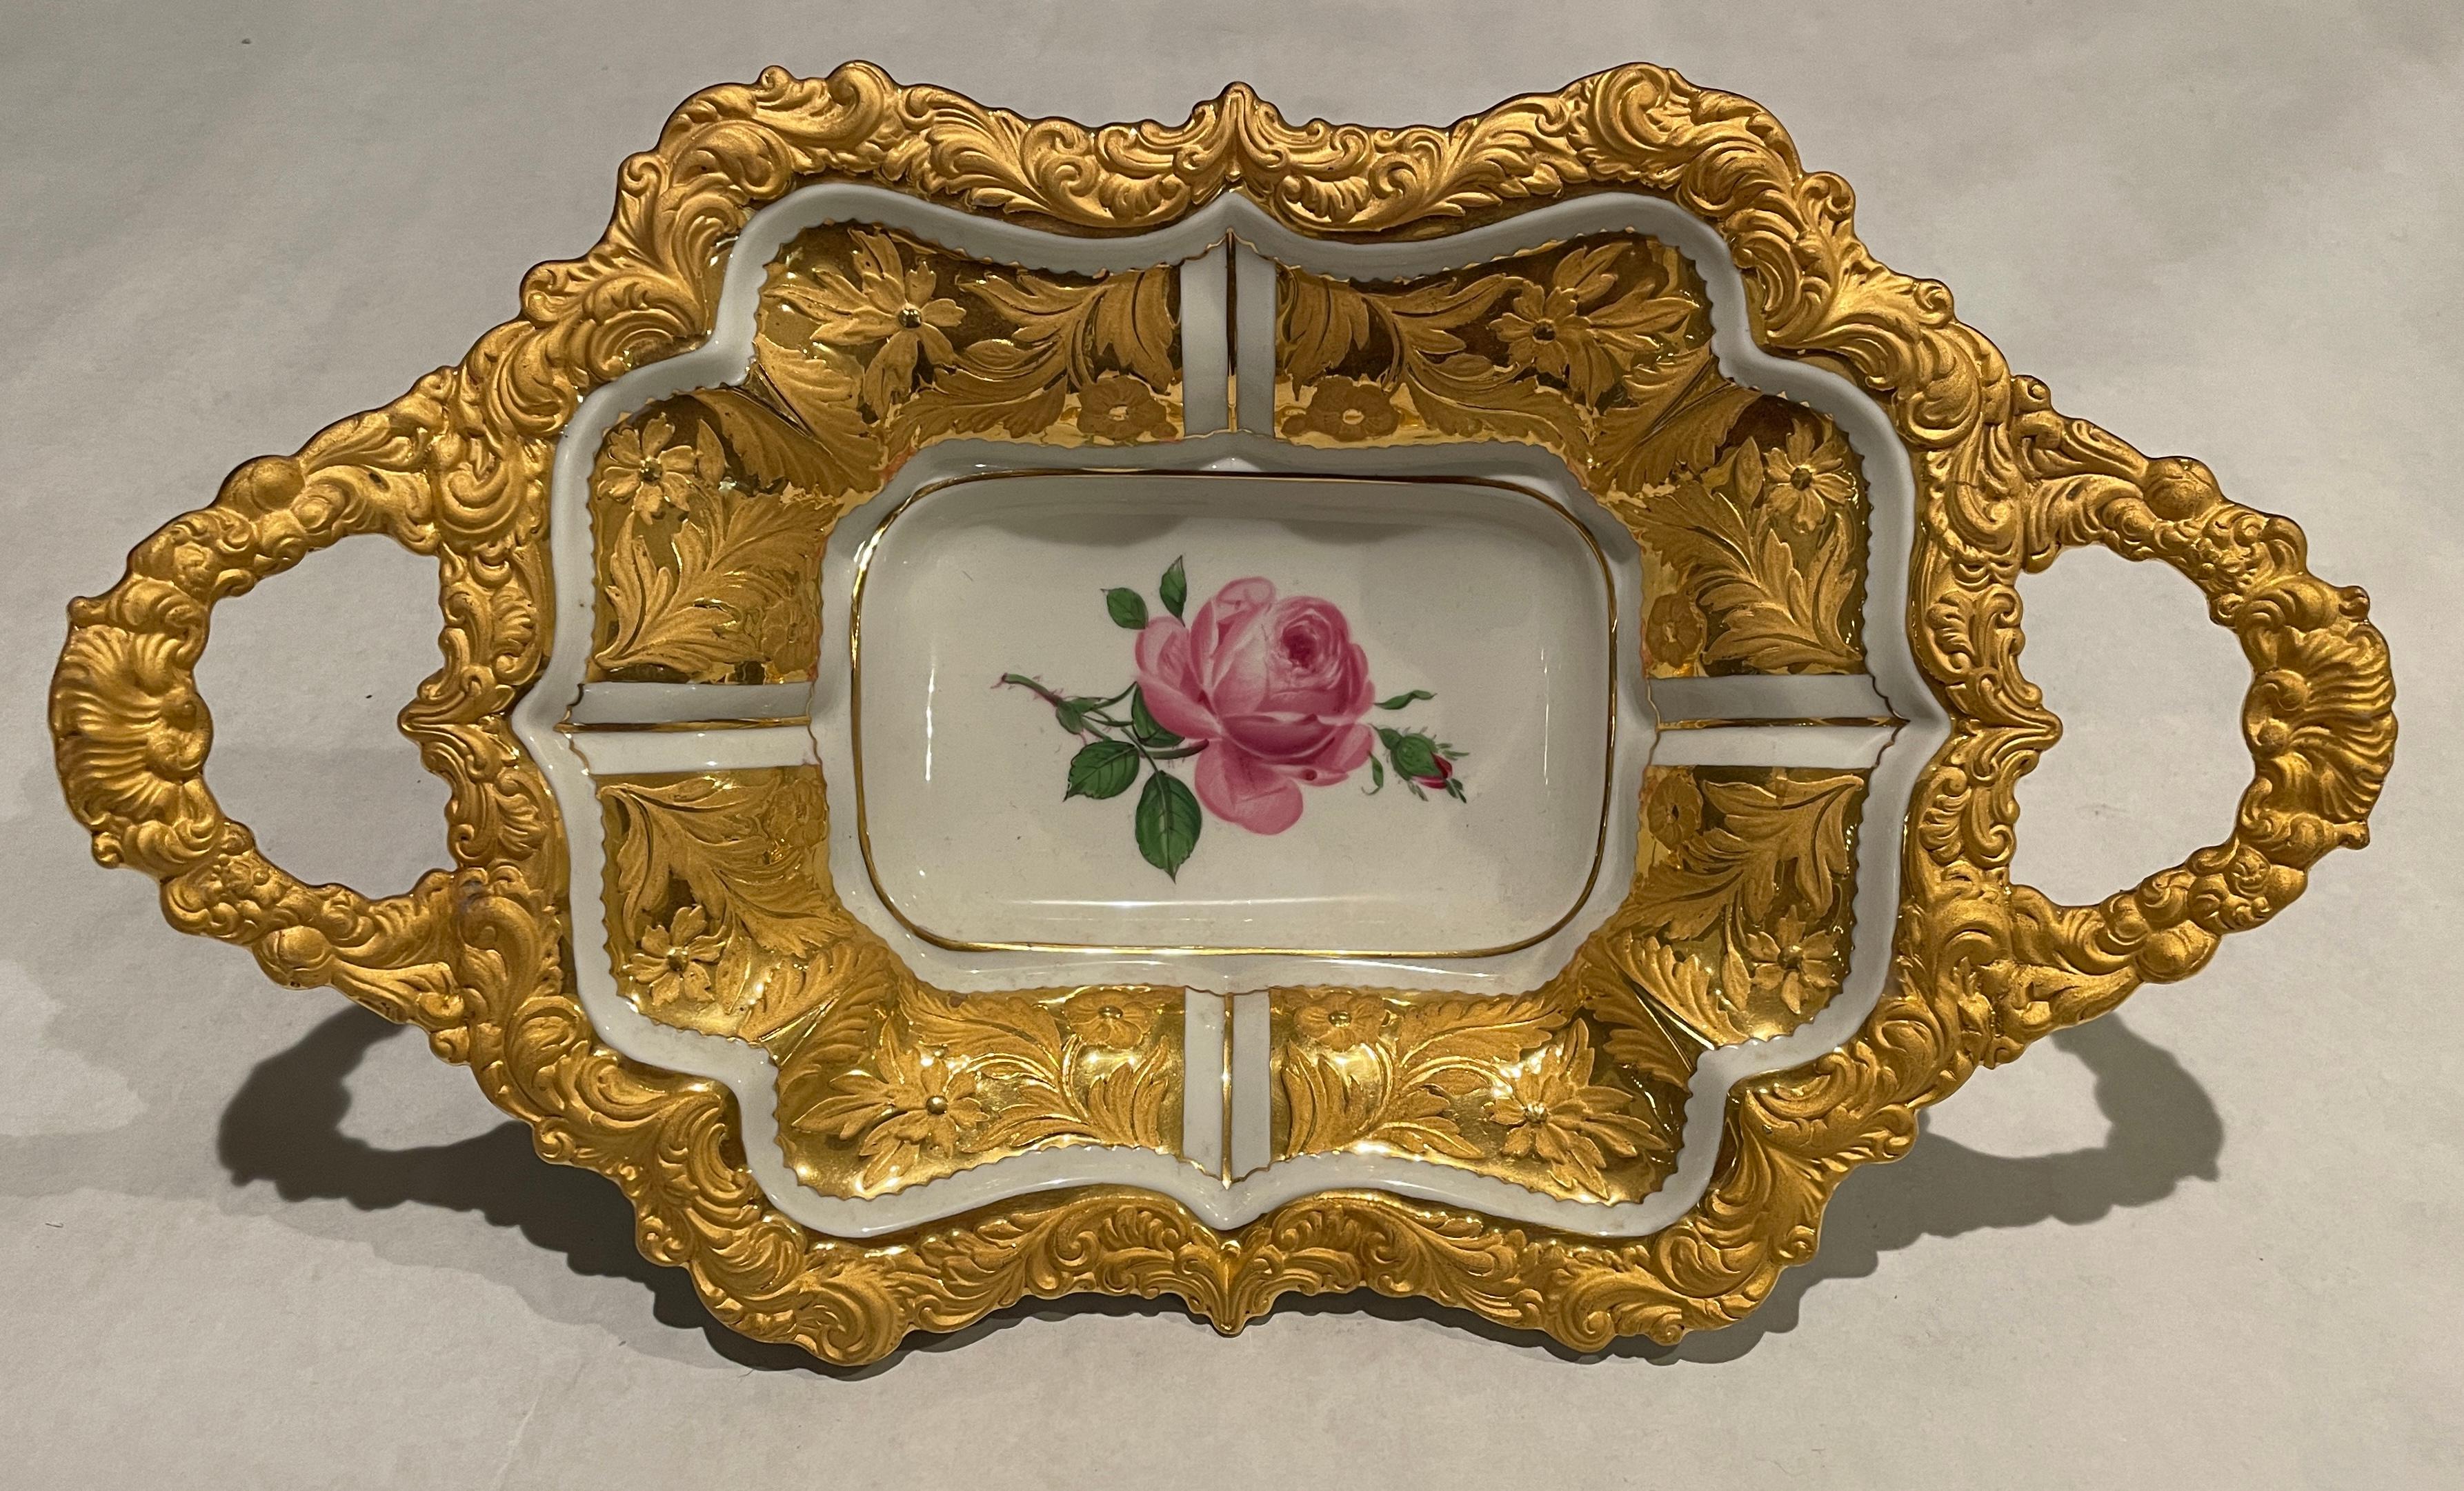 Chargeur ou plateau Meissen à deux poignées, fortement doré, avec une fleur rose peinte au centre et un décor de fleurs et de feuilles en relief sur les panneaux intérieurs, ainsi que sur le bord et les poignées. Les épées croisées avec le point